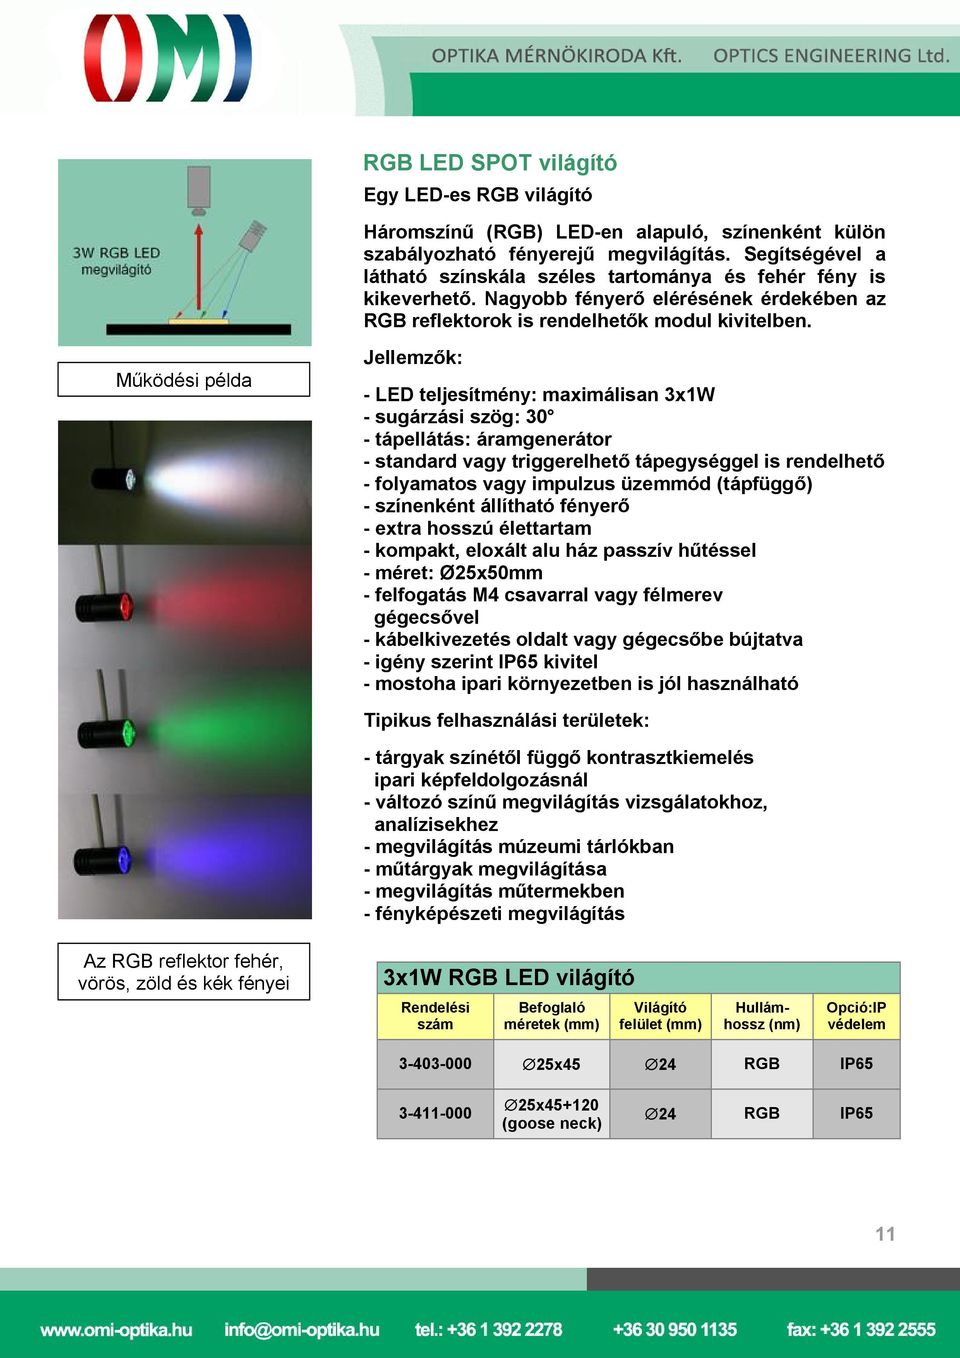 Működési példa - LED teljesítmény: maximálisan 3x1W - sugárzási szög: 30 - tápellátás: áramgenerátor - színenként állítható fényerő - kompakt, eloxált alu ház passzív hűtéssel - méret: Ø25x50mm -